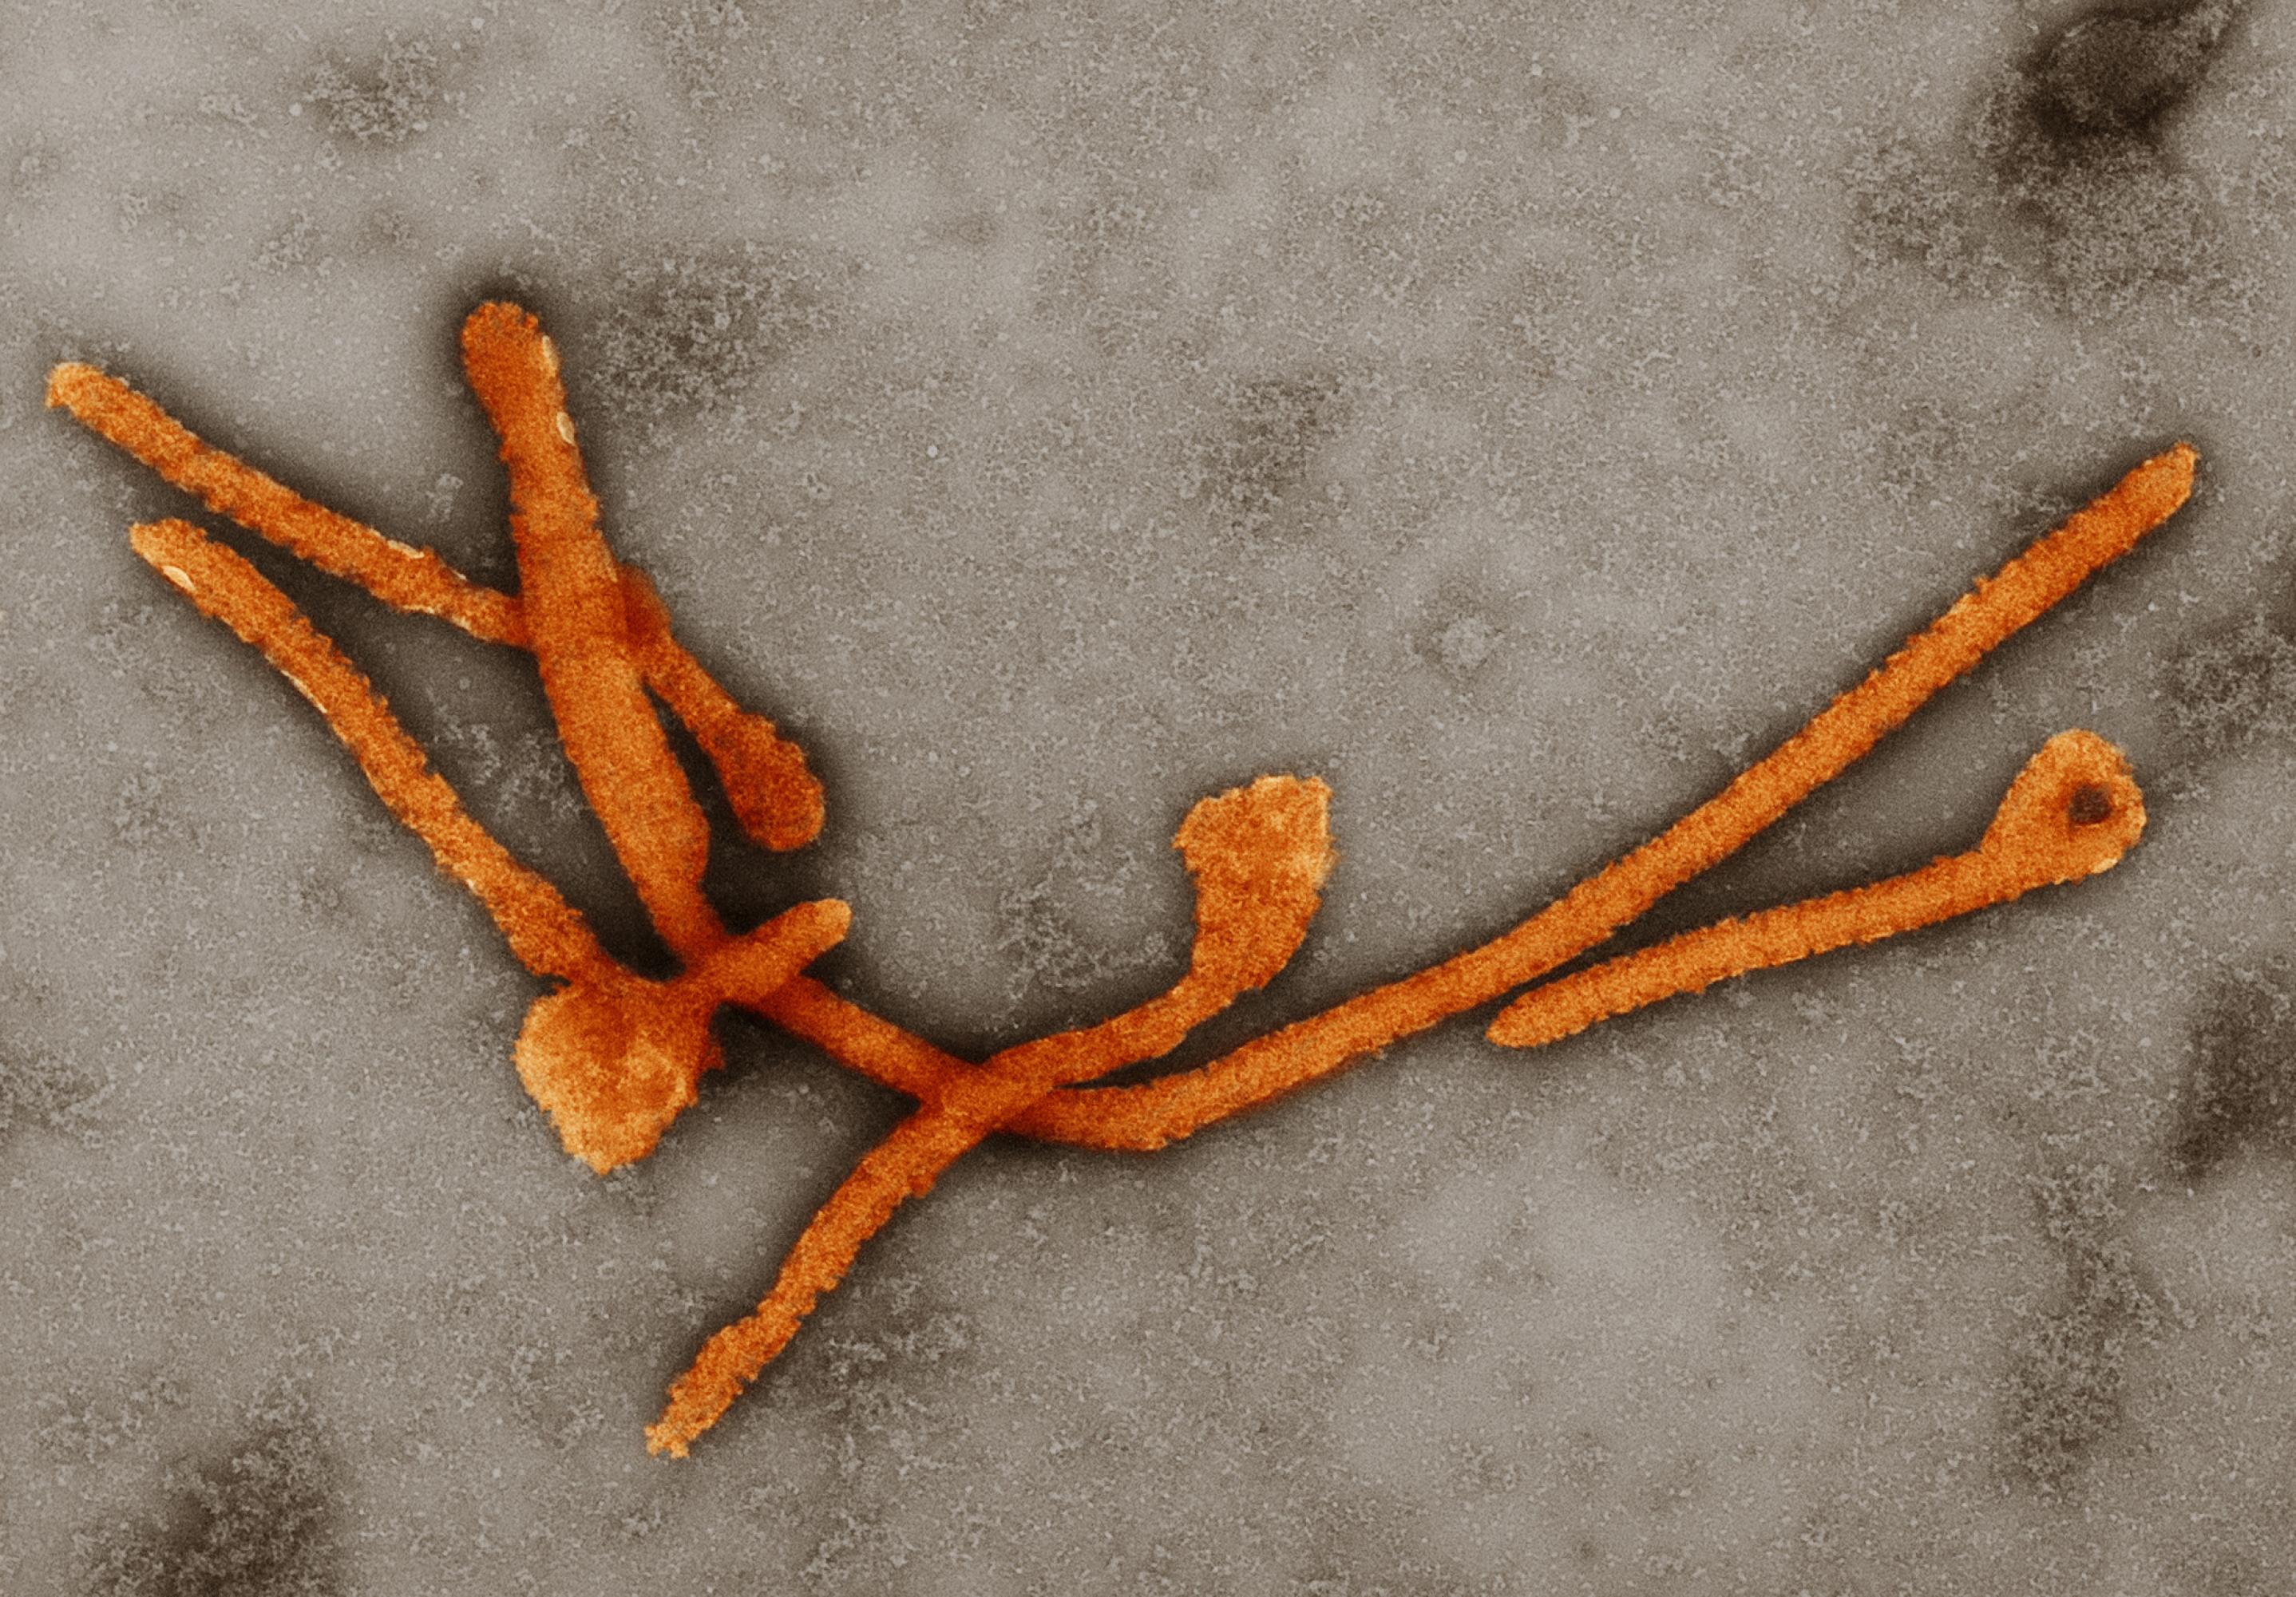 Das Bild zeigt eine elektronenmikroskopische Aufnahme des Ebolavirus, die am Robert Koch-Institut gemacht wurde. Vor grauem Hintergrund sind die orange eingefärbten stäbchenförmigen Strukturen des Virus zu erkennen. Gegen Ebola gibt es inzwischen einen Impfstoff und mehrere Medikamente. Eines der Medikamente, Remdesivir, wird zurzeit als möglicher Wirkstoff gegen Corona getestet. Ebola ist auf Afrika südlich der Sahara begrenzt und fordert mit einer Sterblichkeit von 30 bis 90 Prozent der Betroffenen viel mehr Opfer als Covid-19.